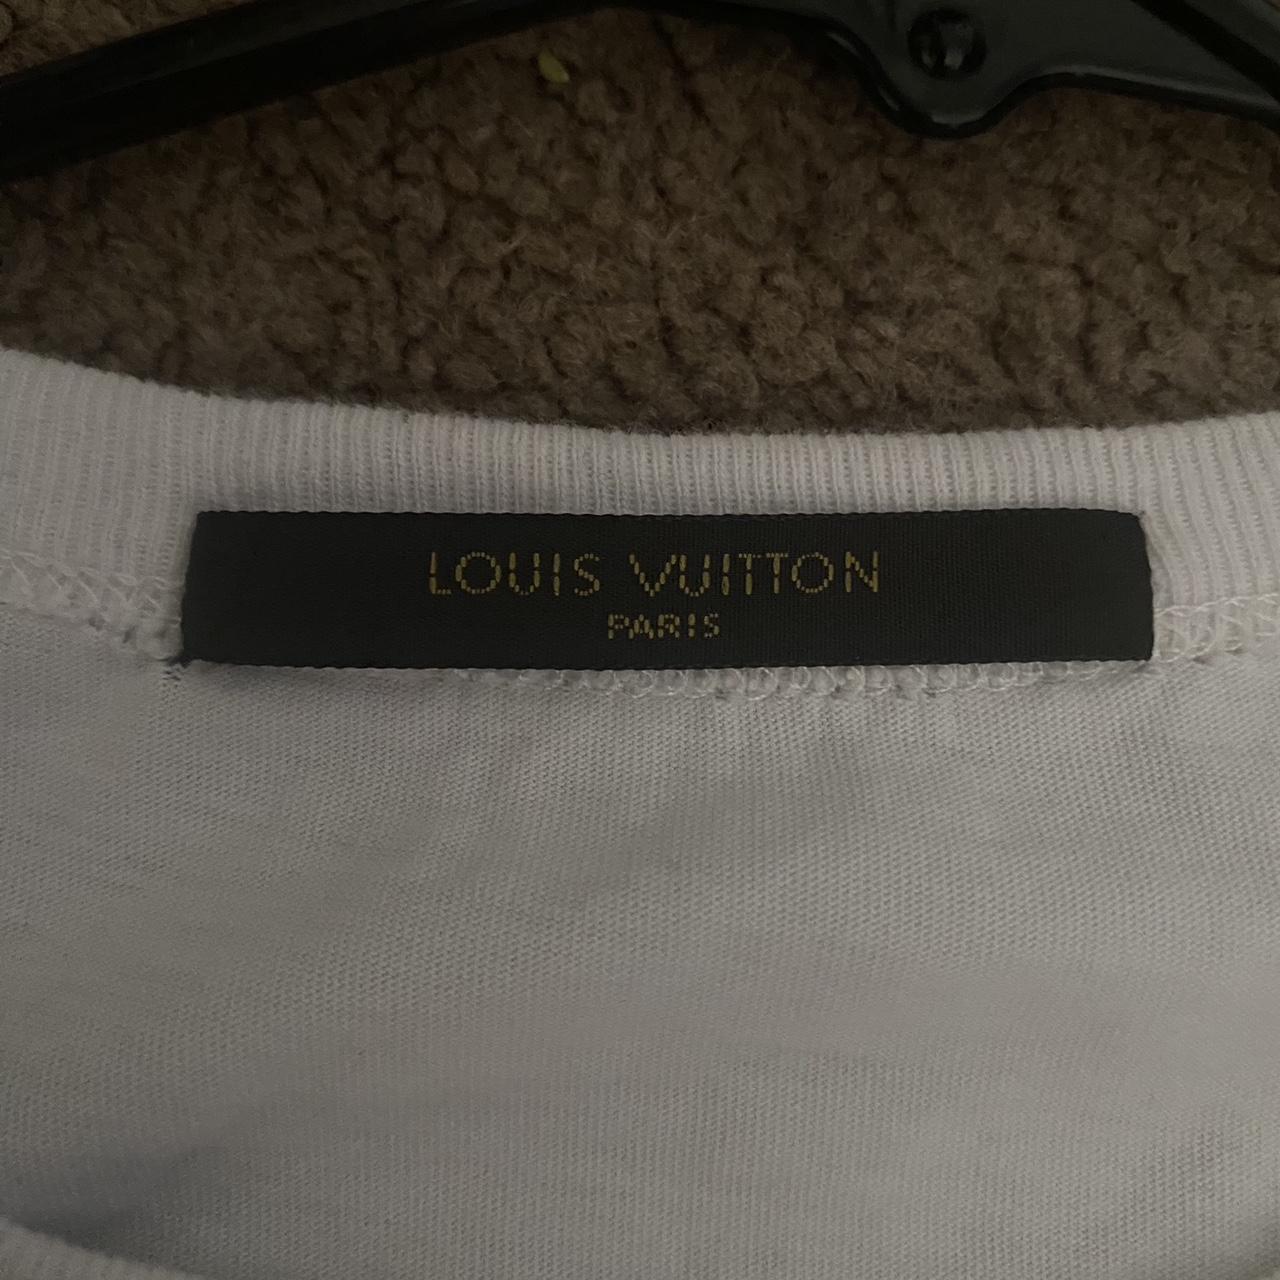 Louis Vuitton Tee (Size L) 9/10 condition - Depop